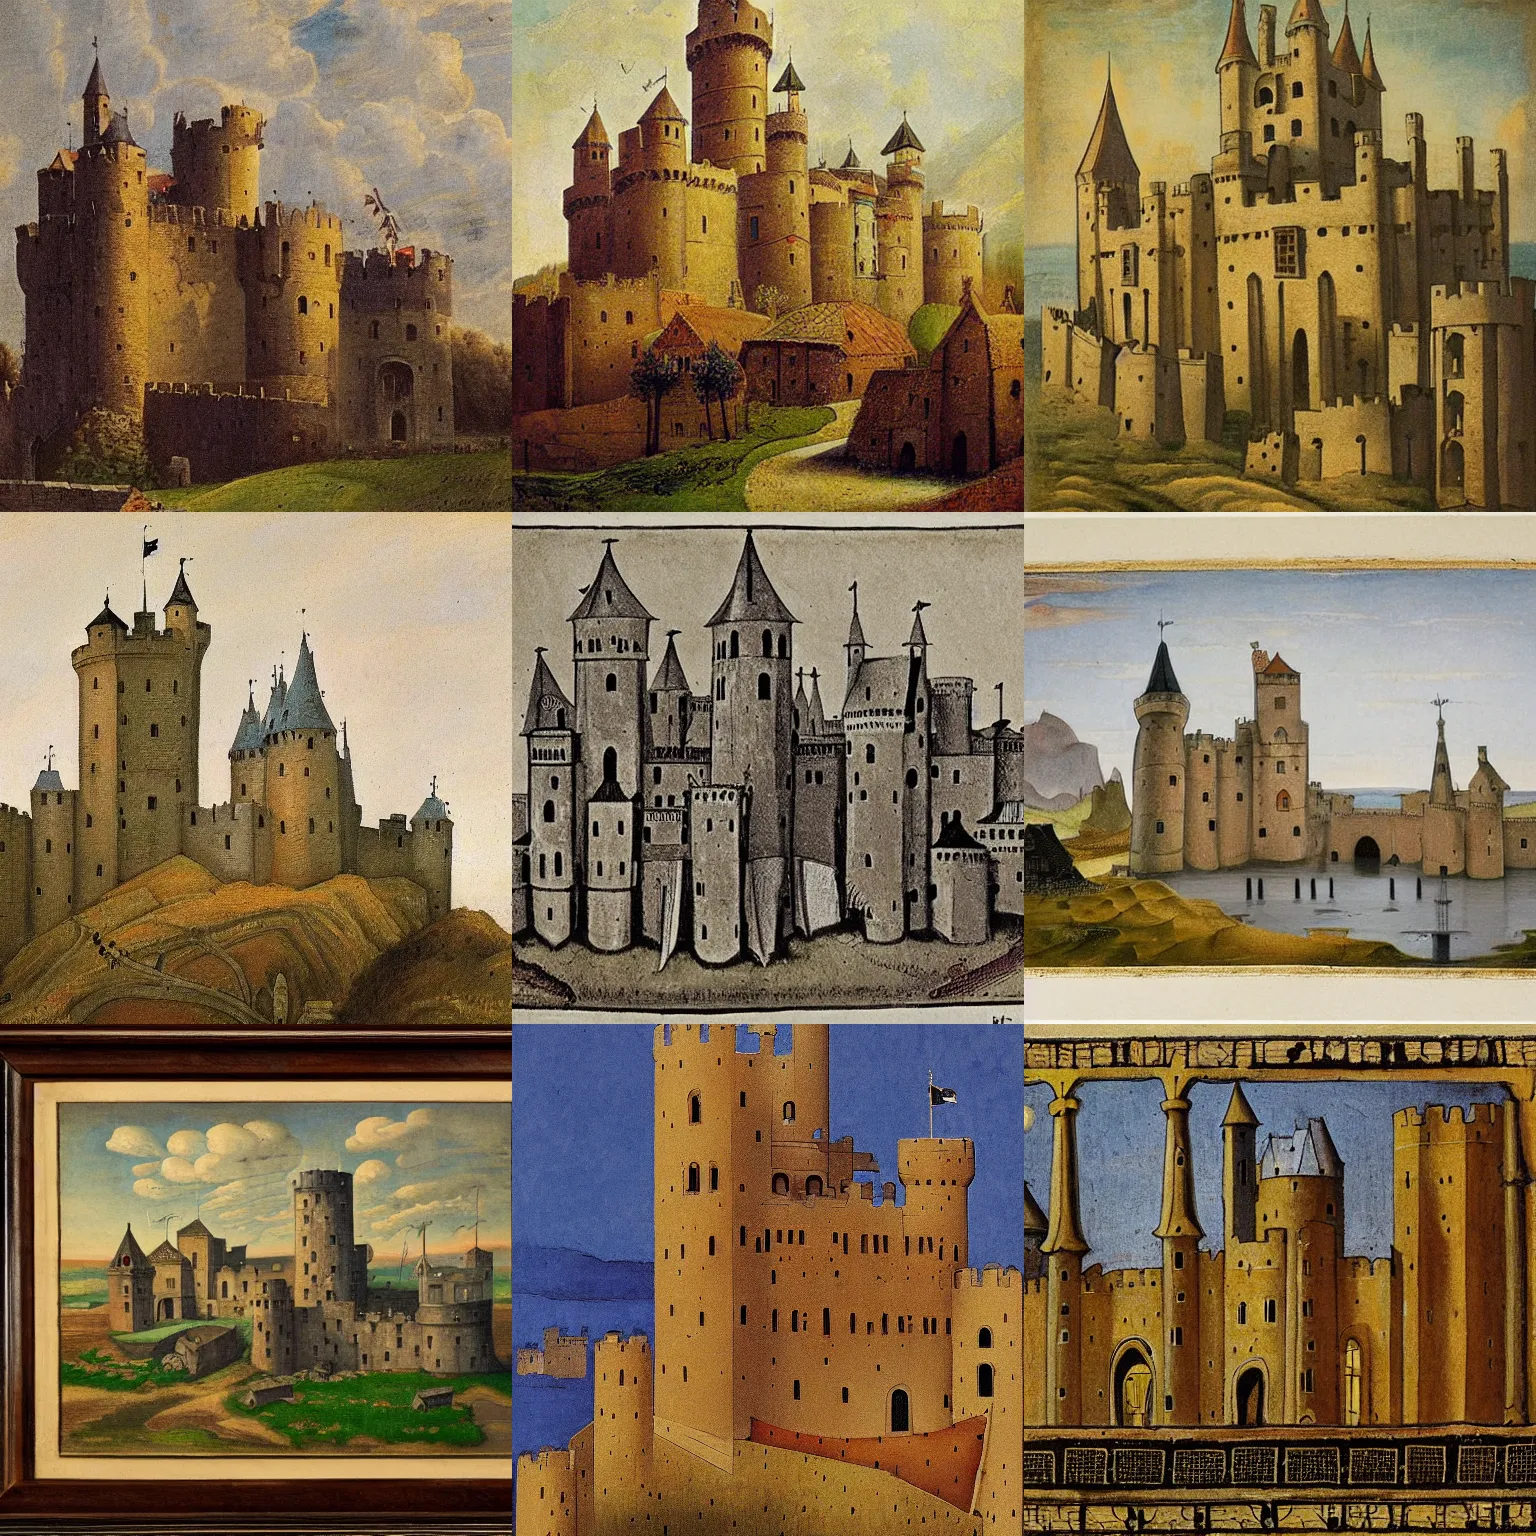 Prompt: medieval castle, by floris jespers